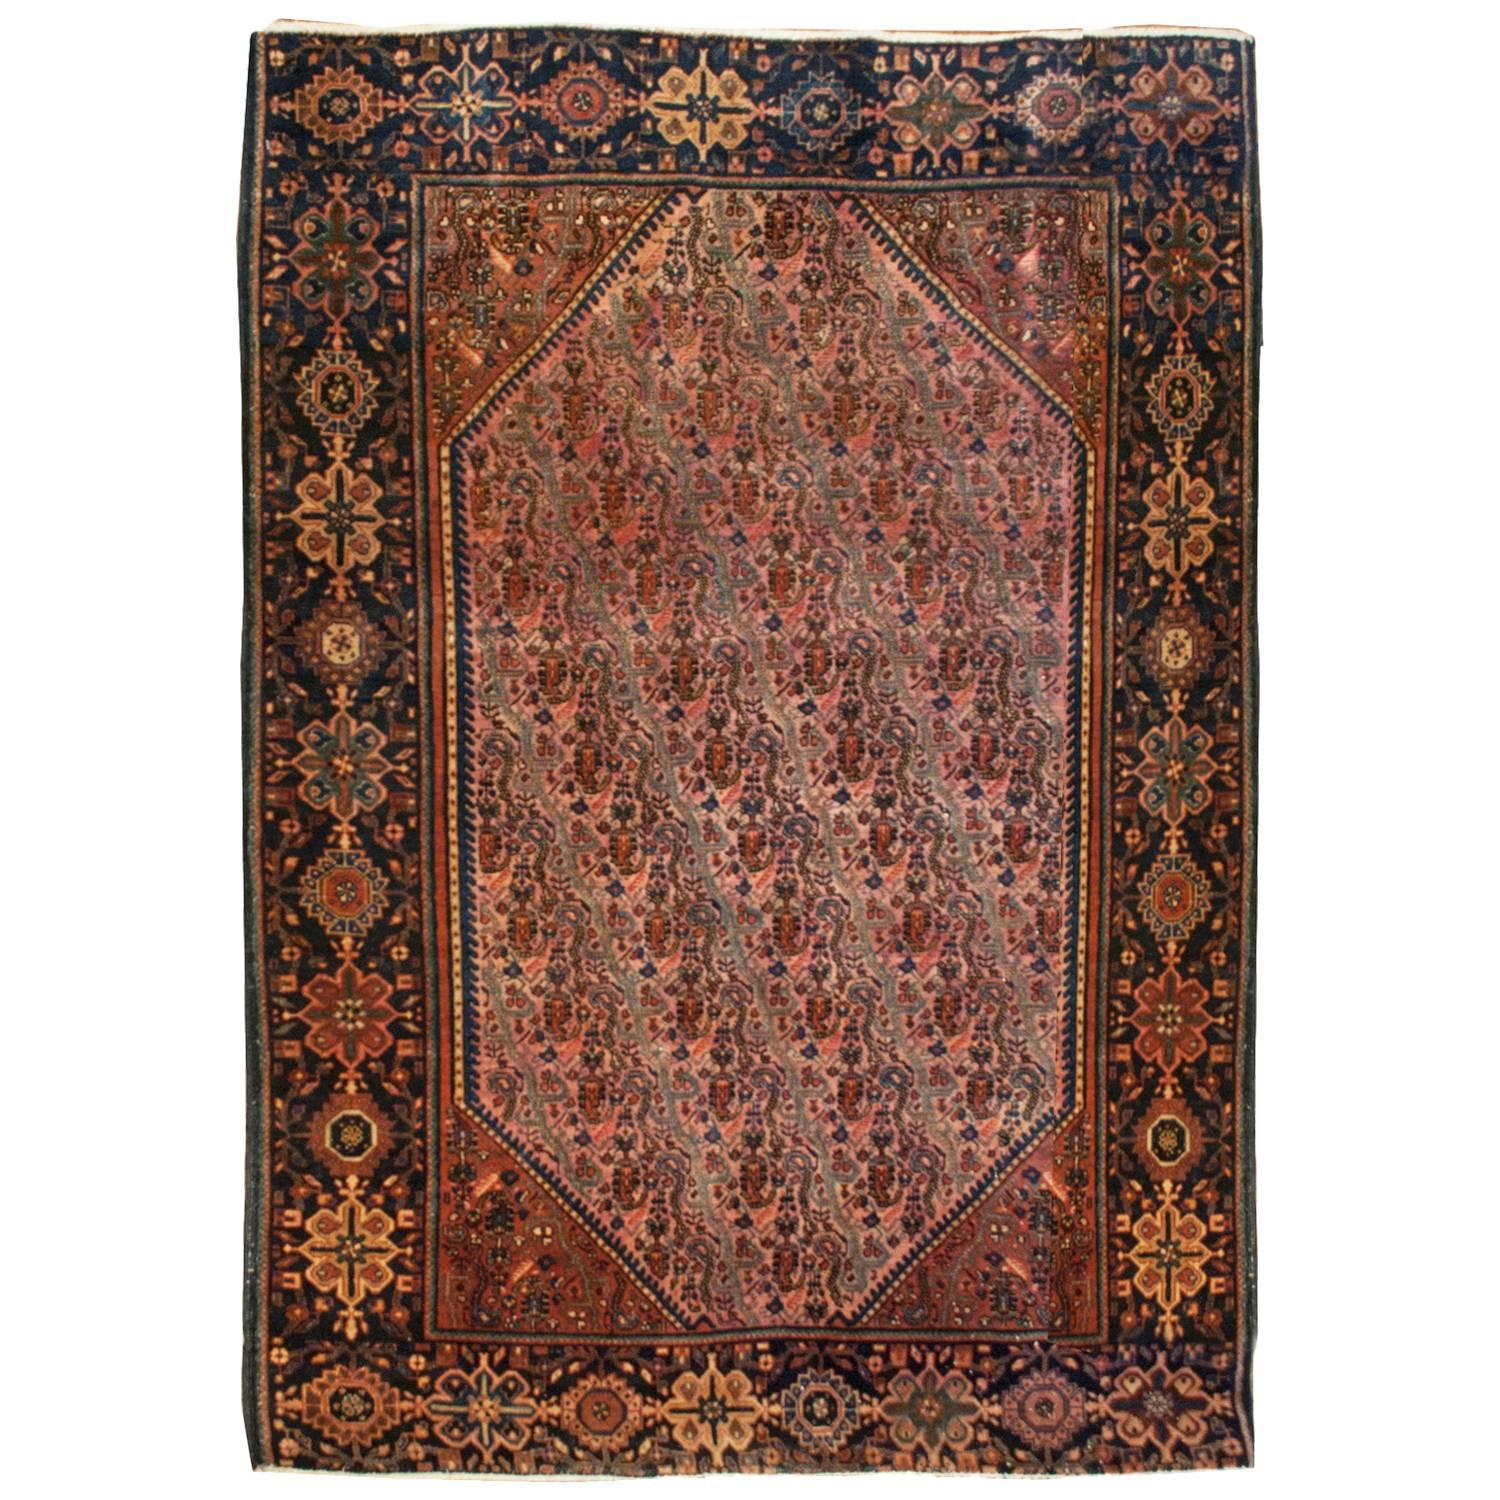 Außergewöhnlicher Sarouk Farahan-Teppich aus dem 19. Jahrhundert